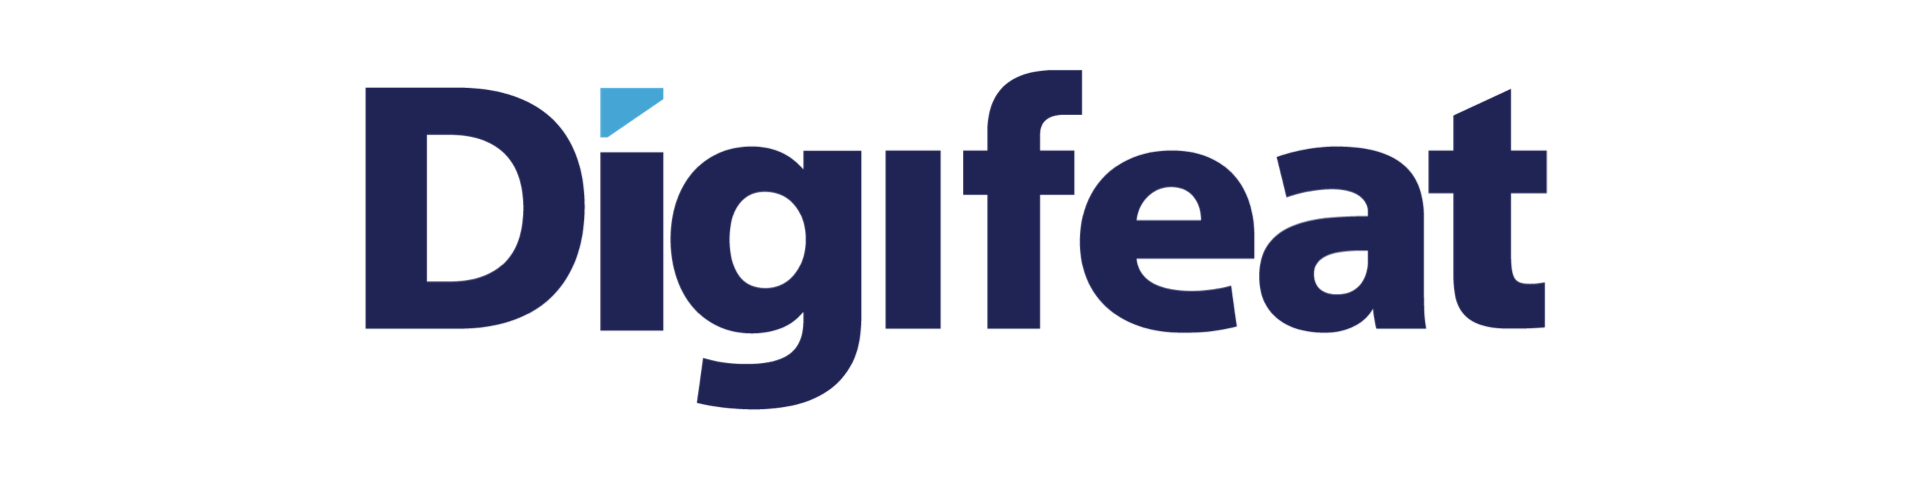 digifeat logo